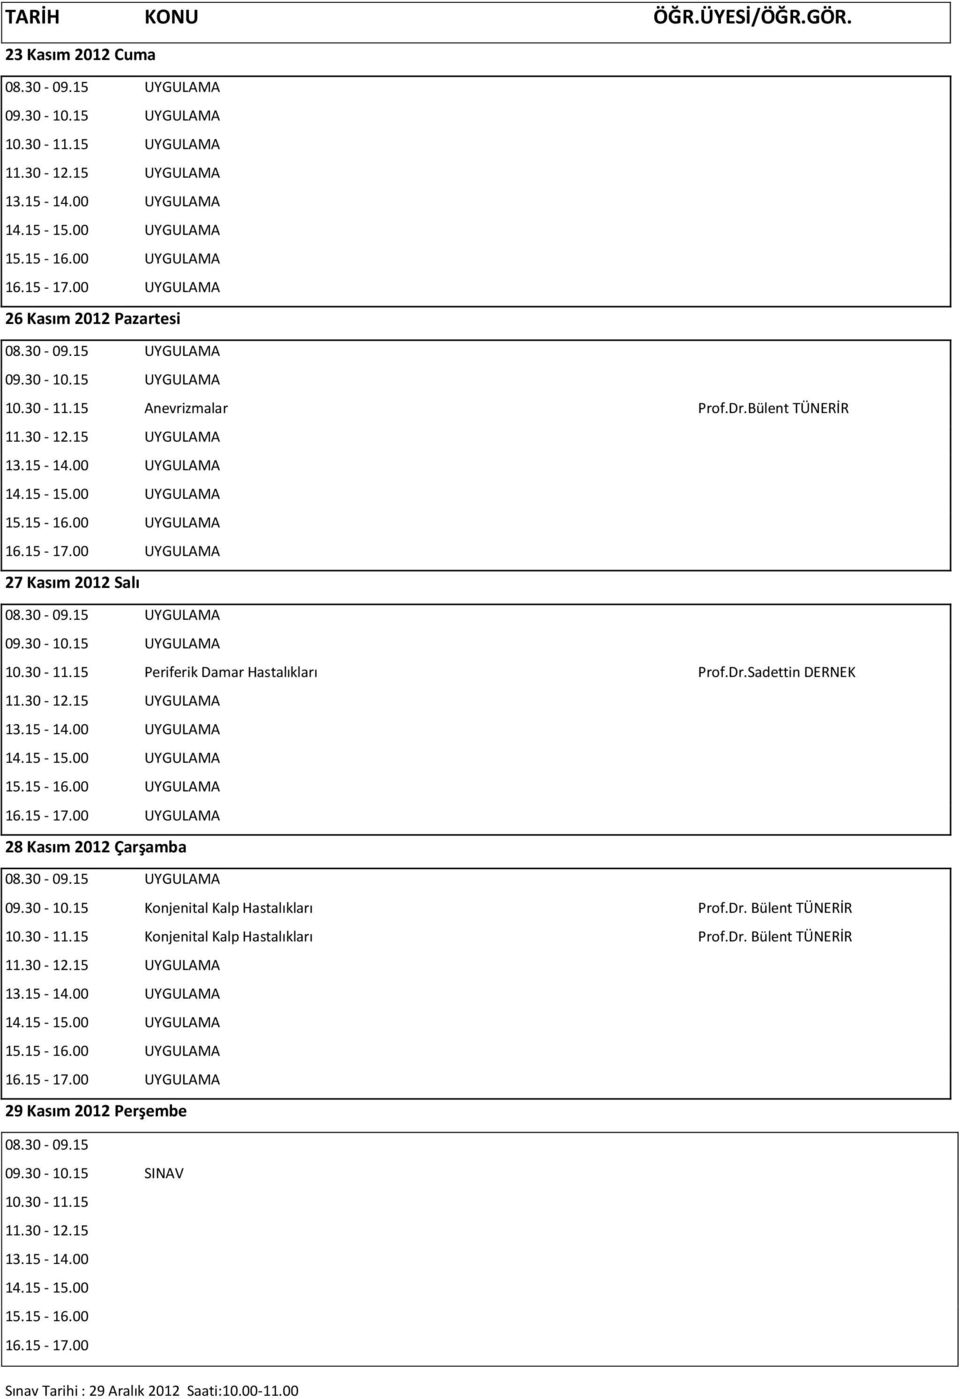 15 Konjenital Kalp Hastalıkları Prof.Dr. Bülent TÜNERİR 29 Kasım 2012 Perşembe 08.30-09.15 09.30-10.15 SINAV 10.30-11.15 11.